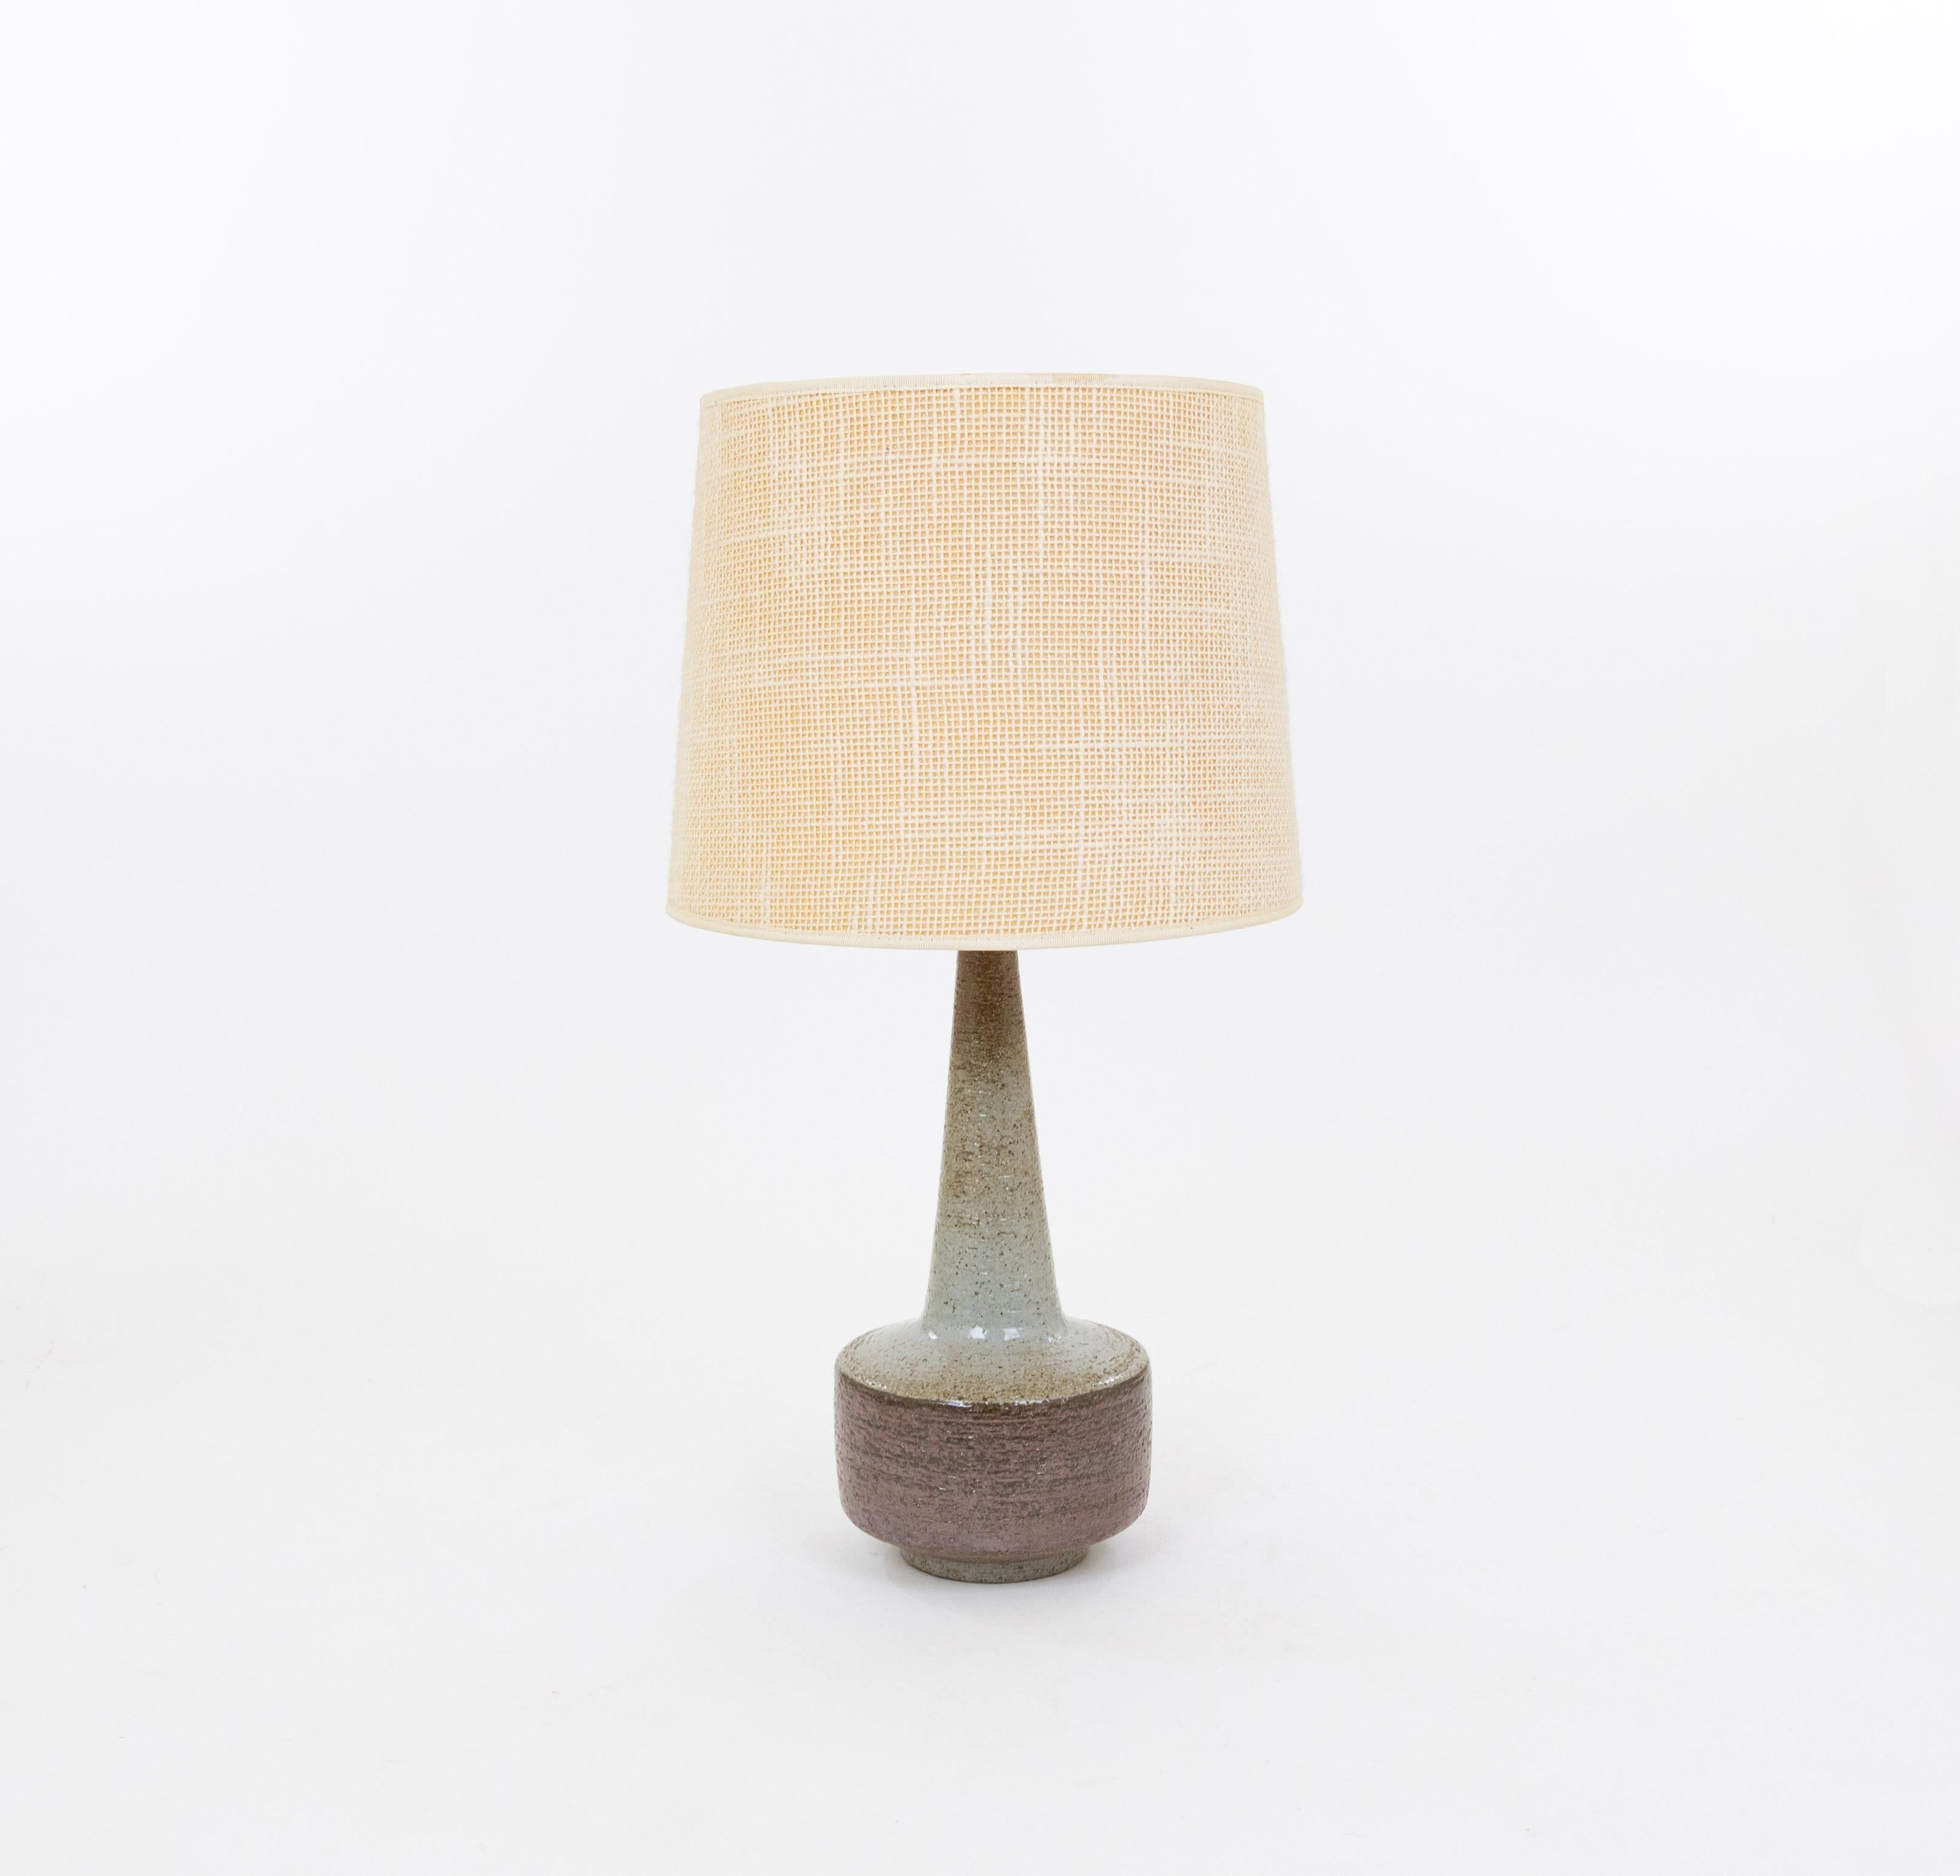 Lampe de table modèle DL/46 réalisée par Annelise et Per Linnemann-Schmidt pour Palshus dans les années 1960. La base décorée à la main est de couleur marron et grise. 

La lampe est livrée avec son support d'abat-jour d'origine. L'abat-jour et le